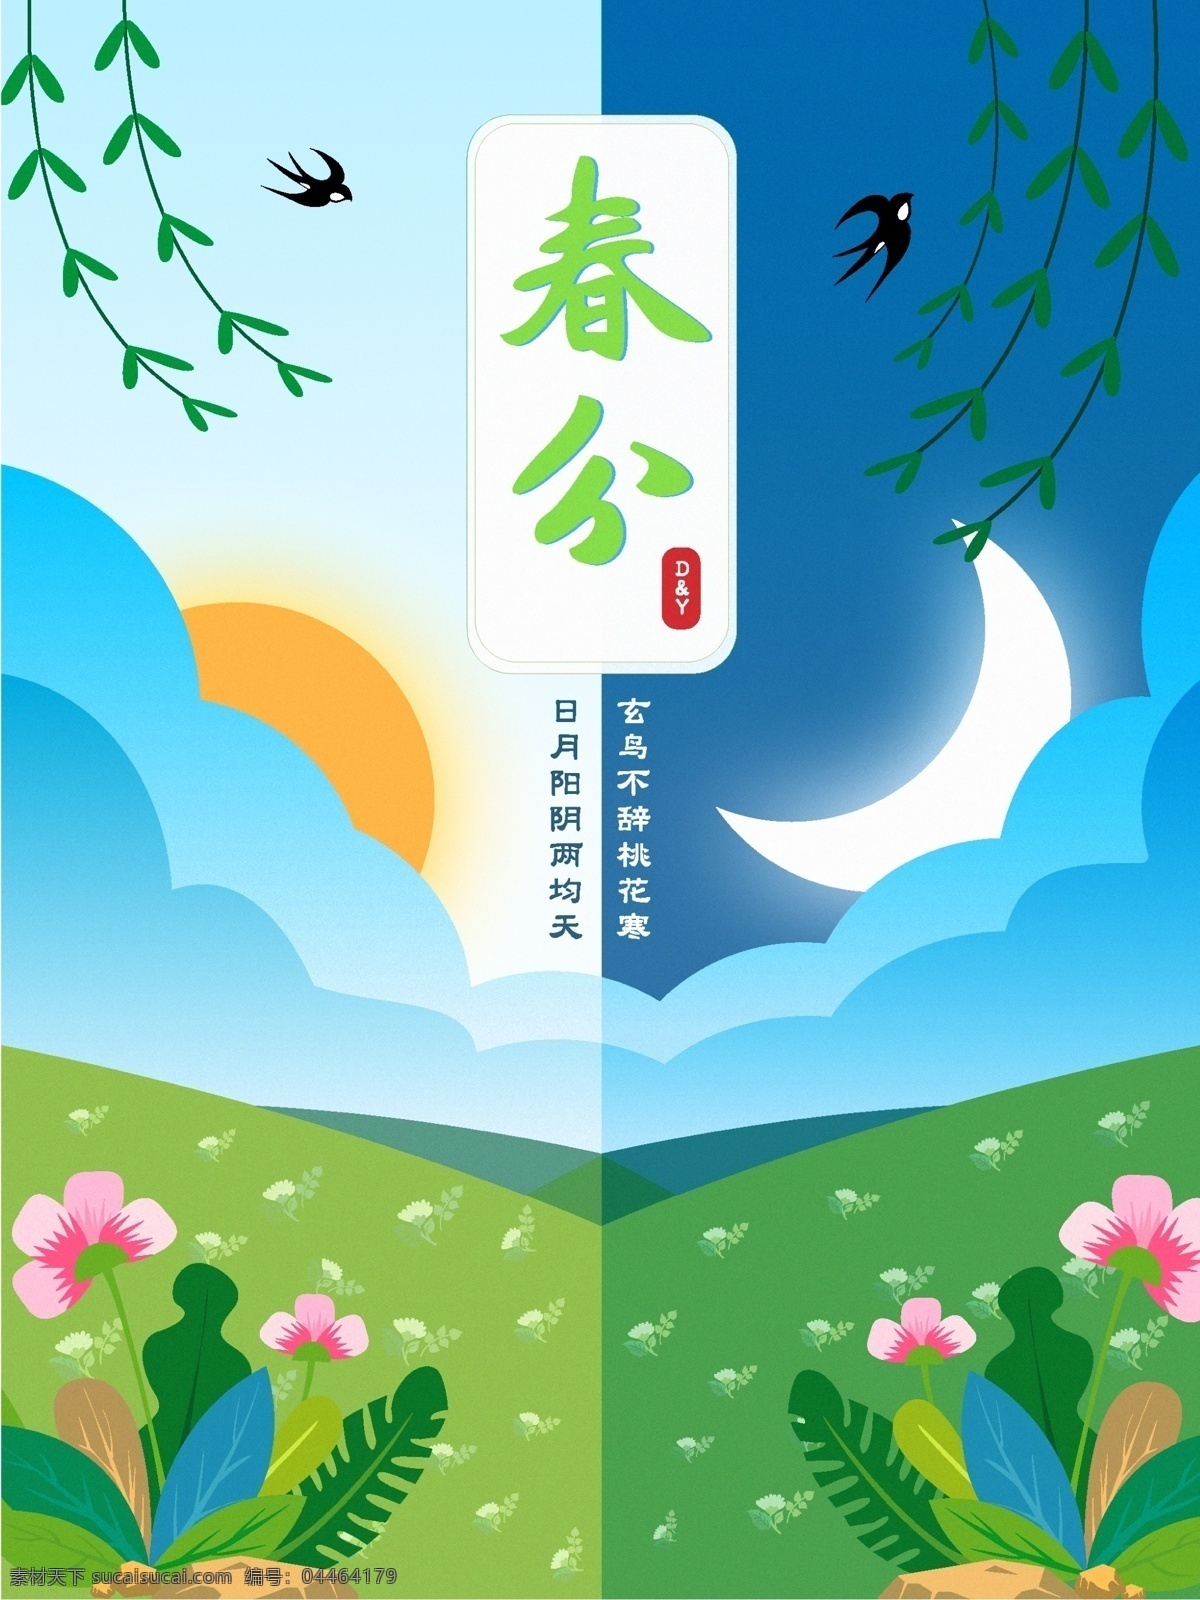 春分 昼夜 节日 节气 平面海报 华文文化 文化艺术 节日庆祝